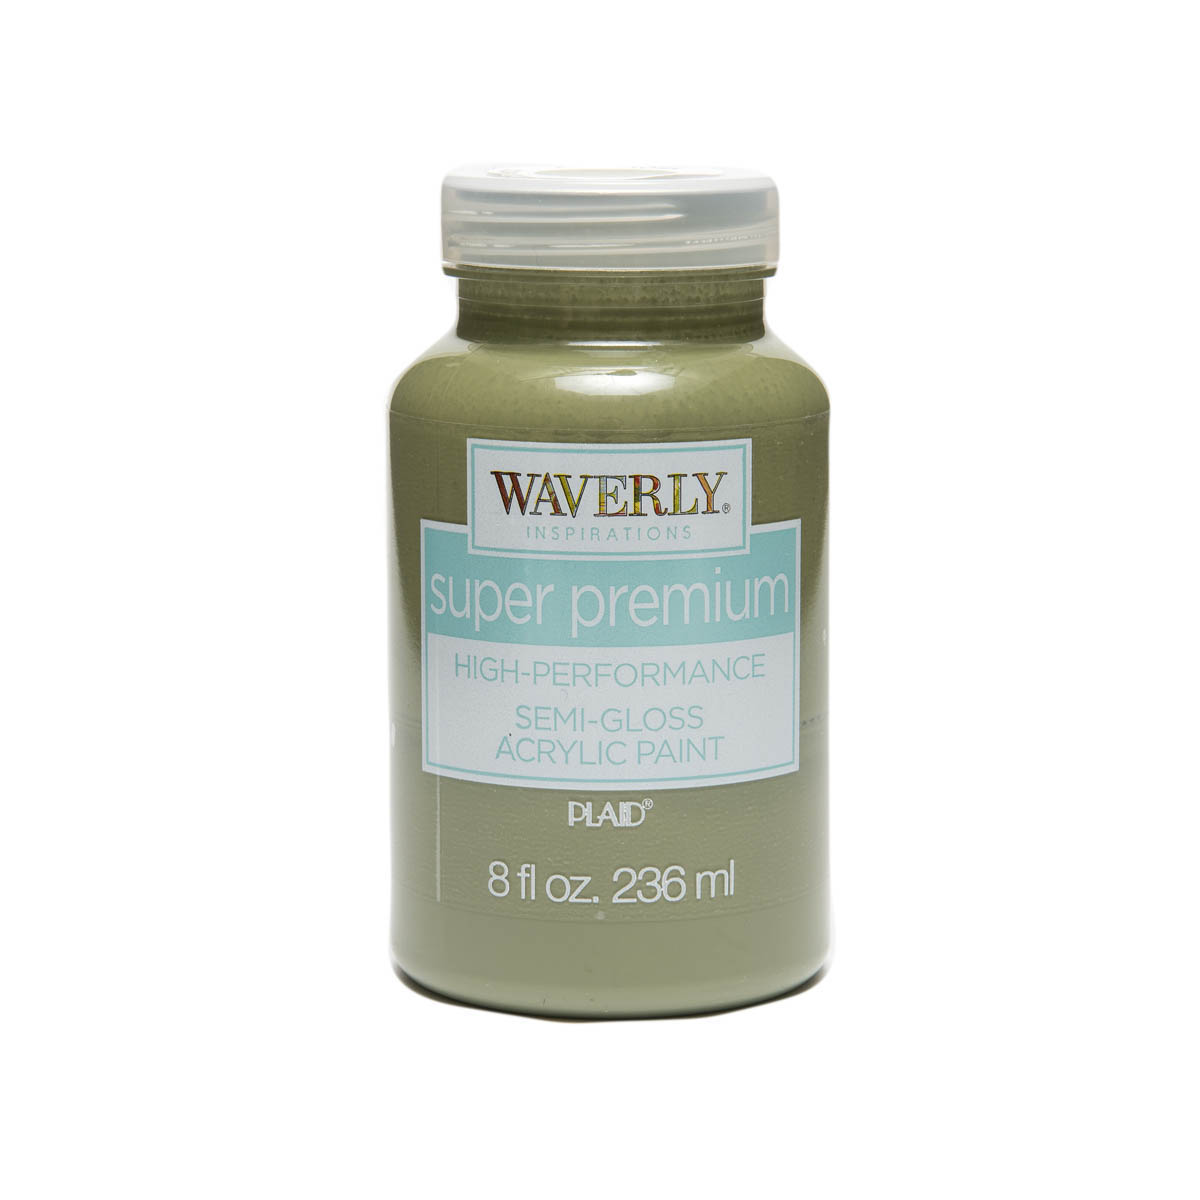 Waverly ® Inspirations Super Premium Semi-Gloss Acrylic Paint - Moss, 8 oz. - 60913E